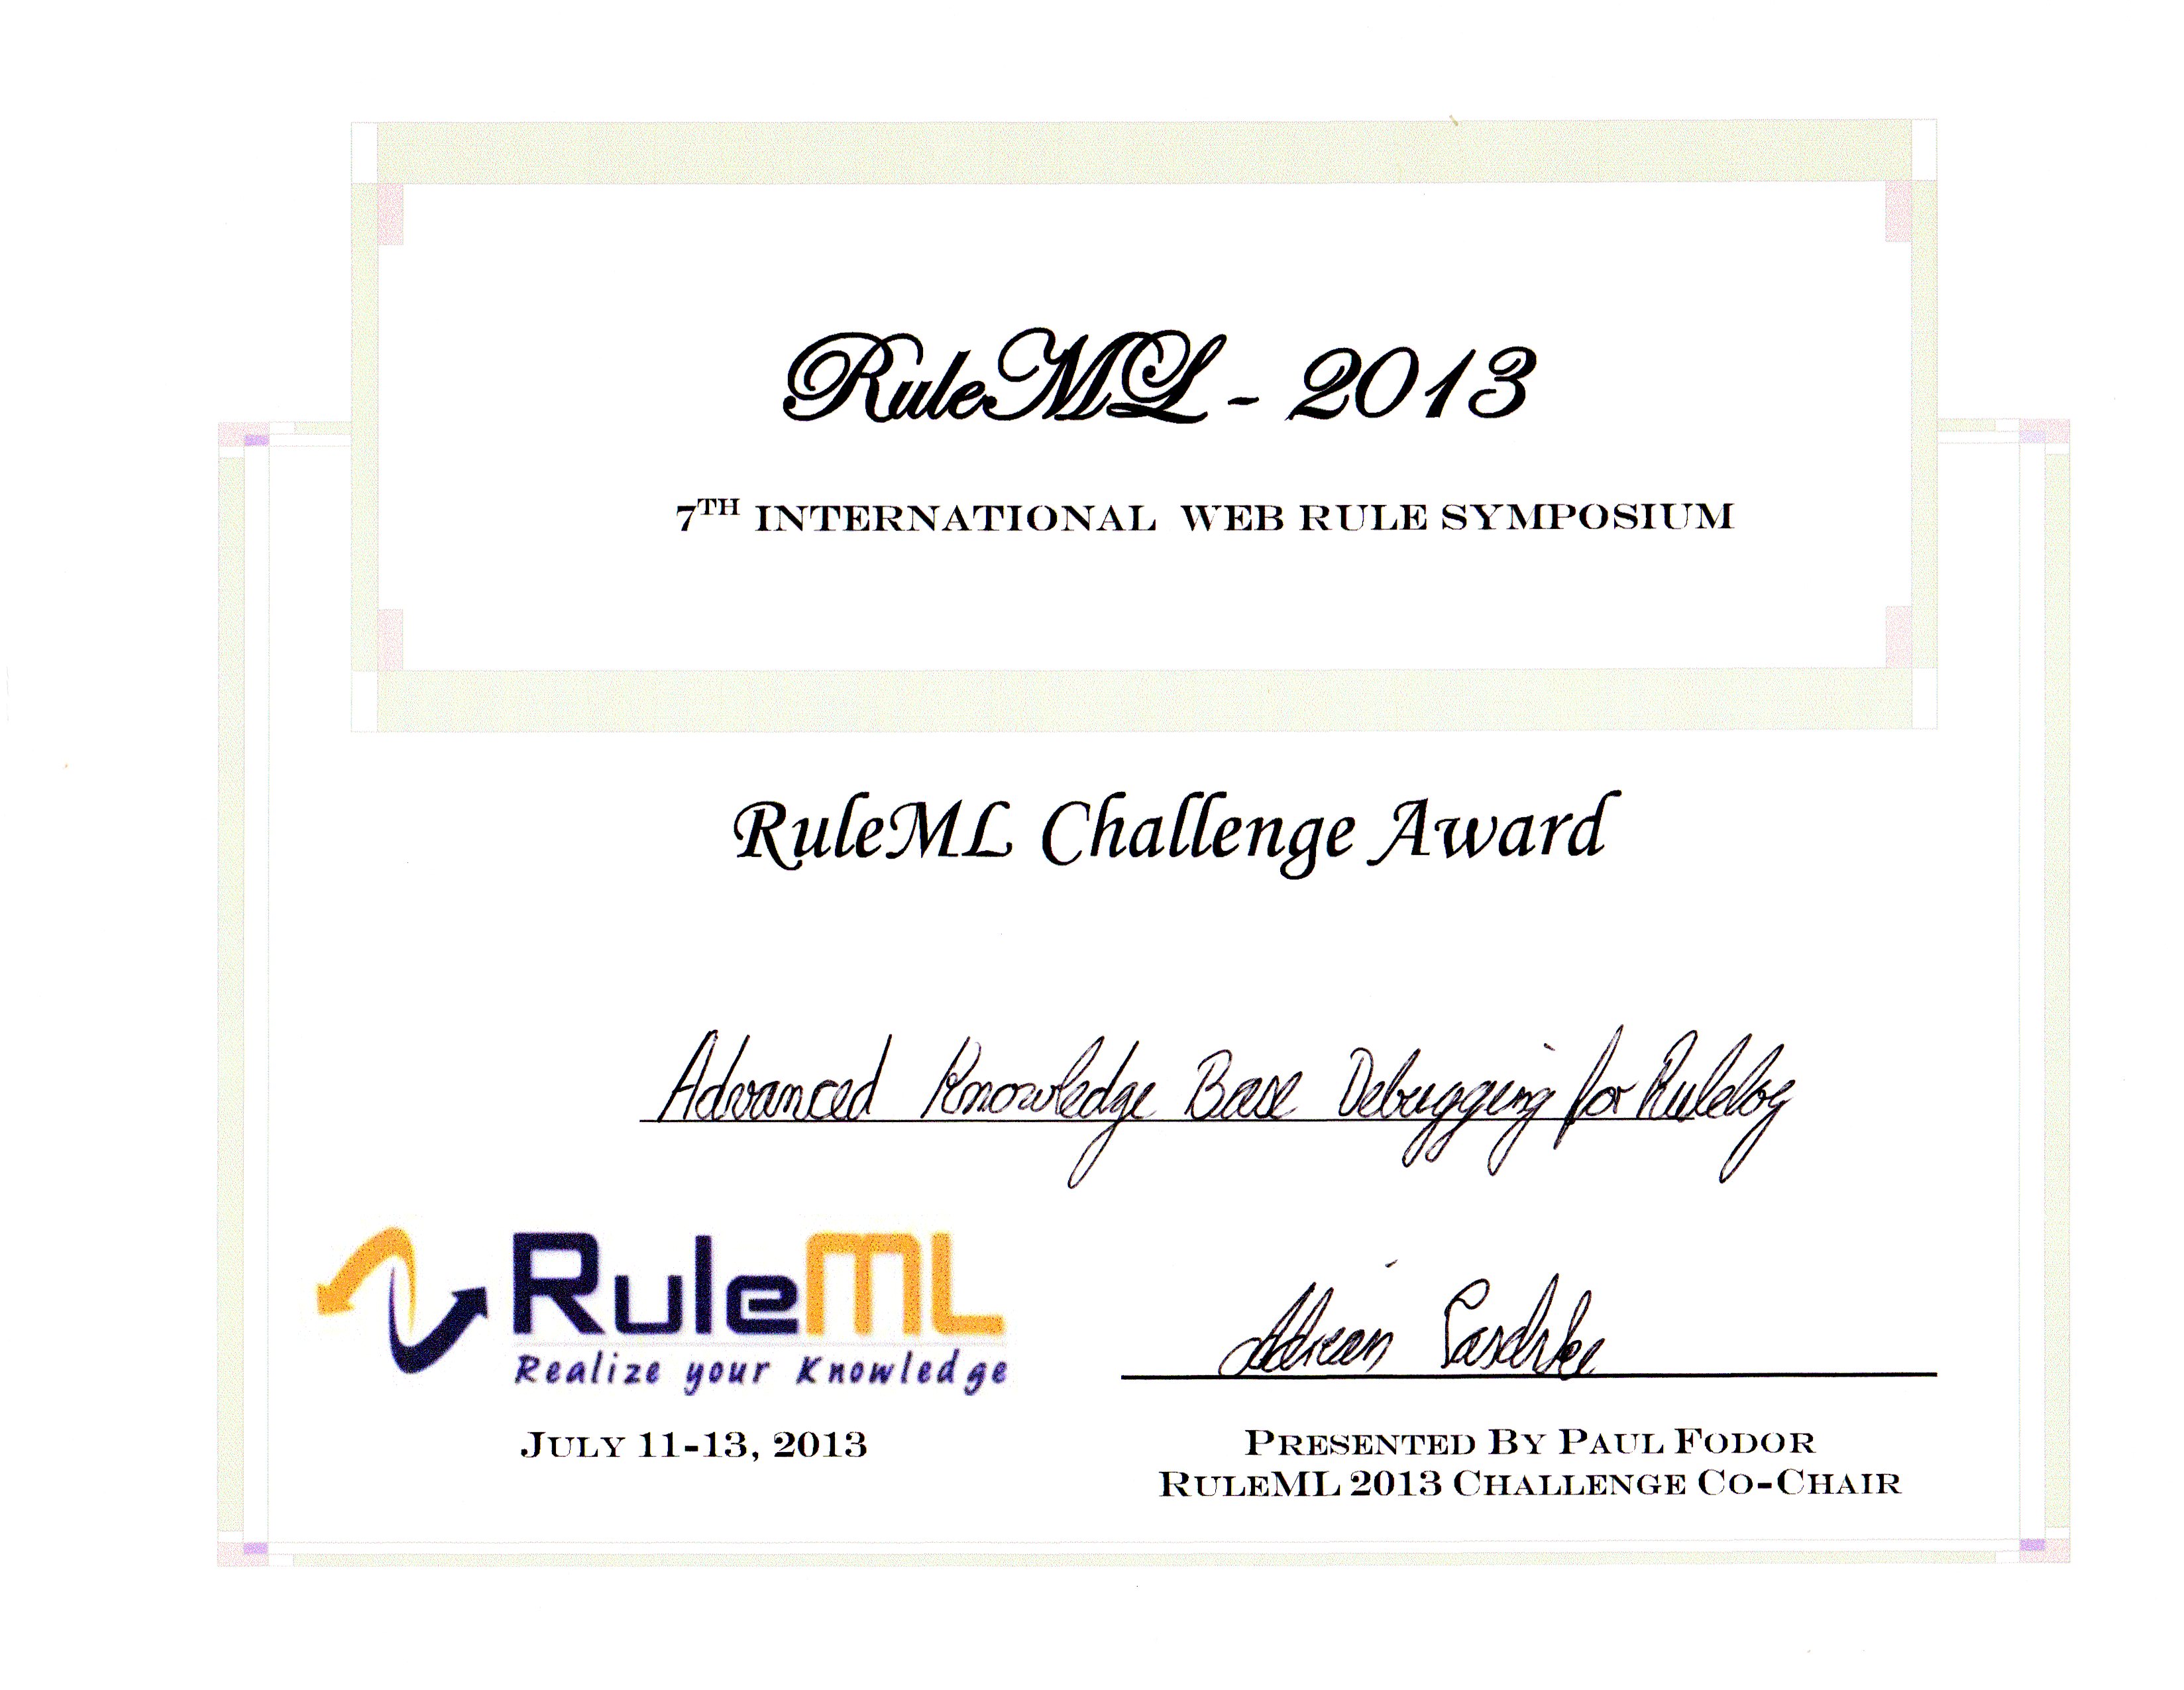 Rulelog system presentation wins Award at RuleML 2013